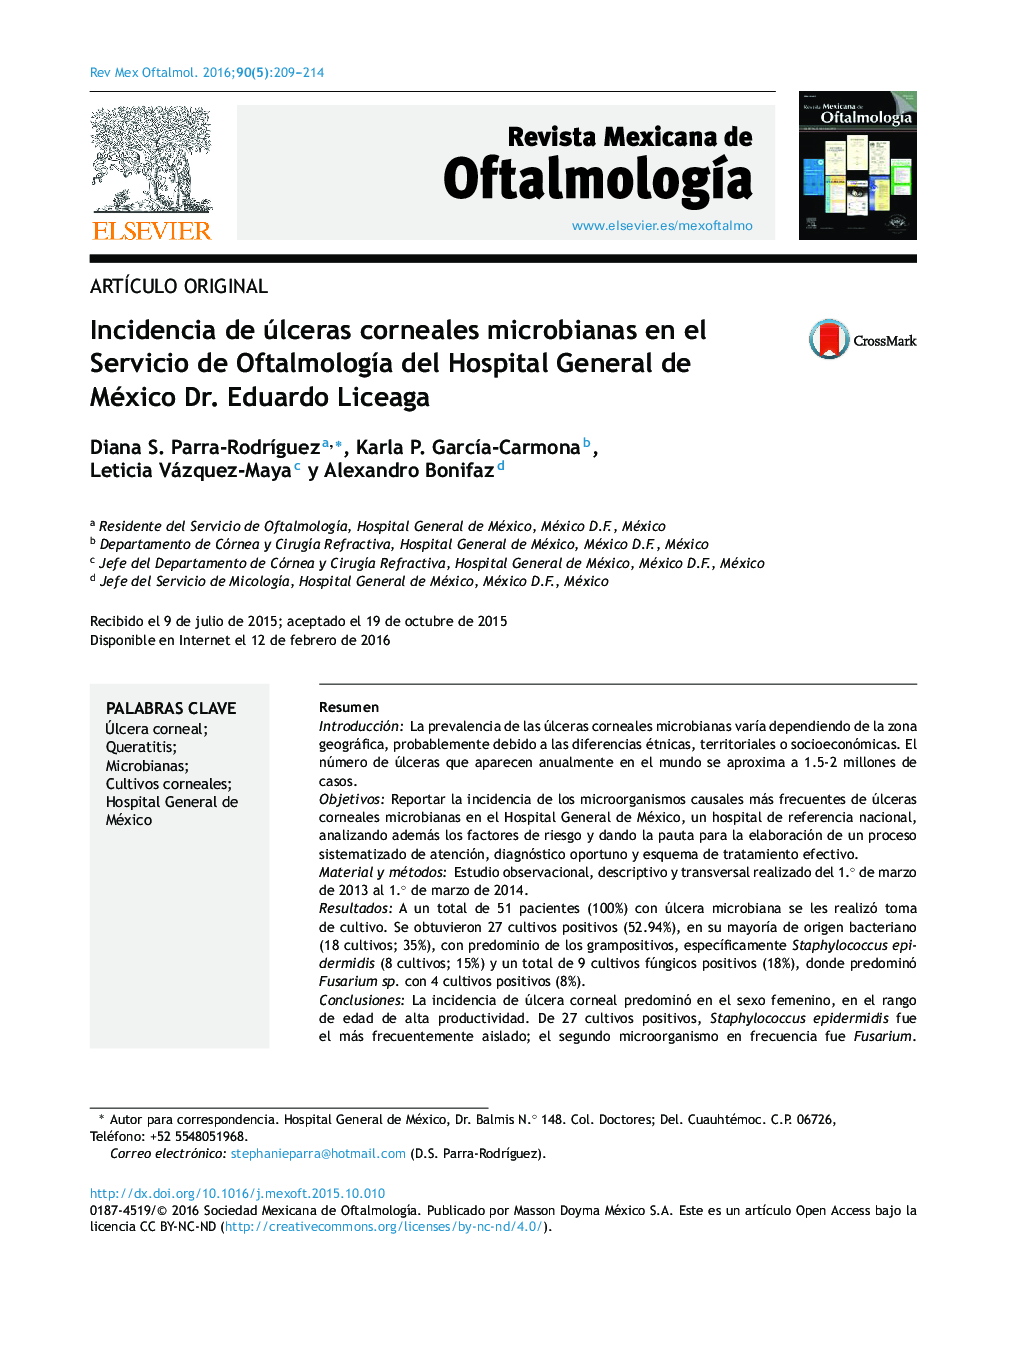 Incidencia de úlceras corneales microbianas en el Servicio de Oftalmología del Hospital General de México Dr. Eduardo Liceaga